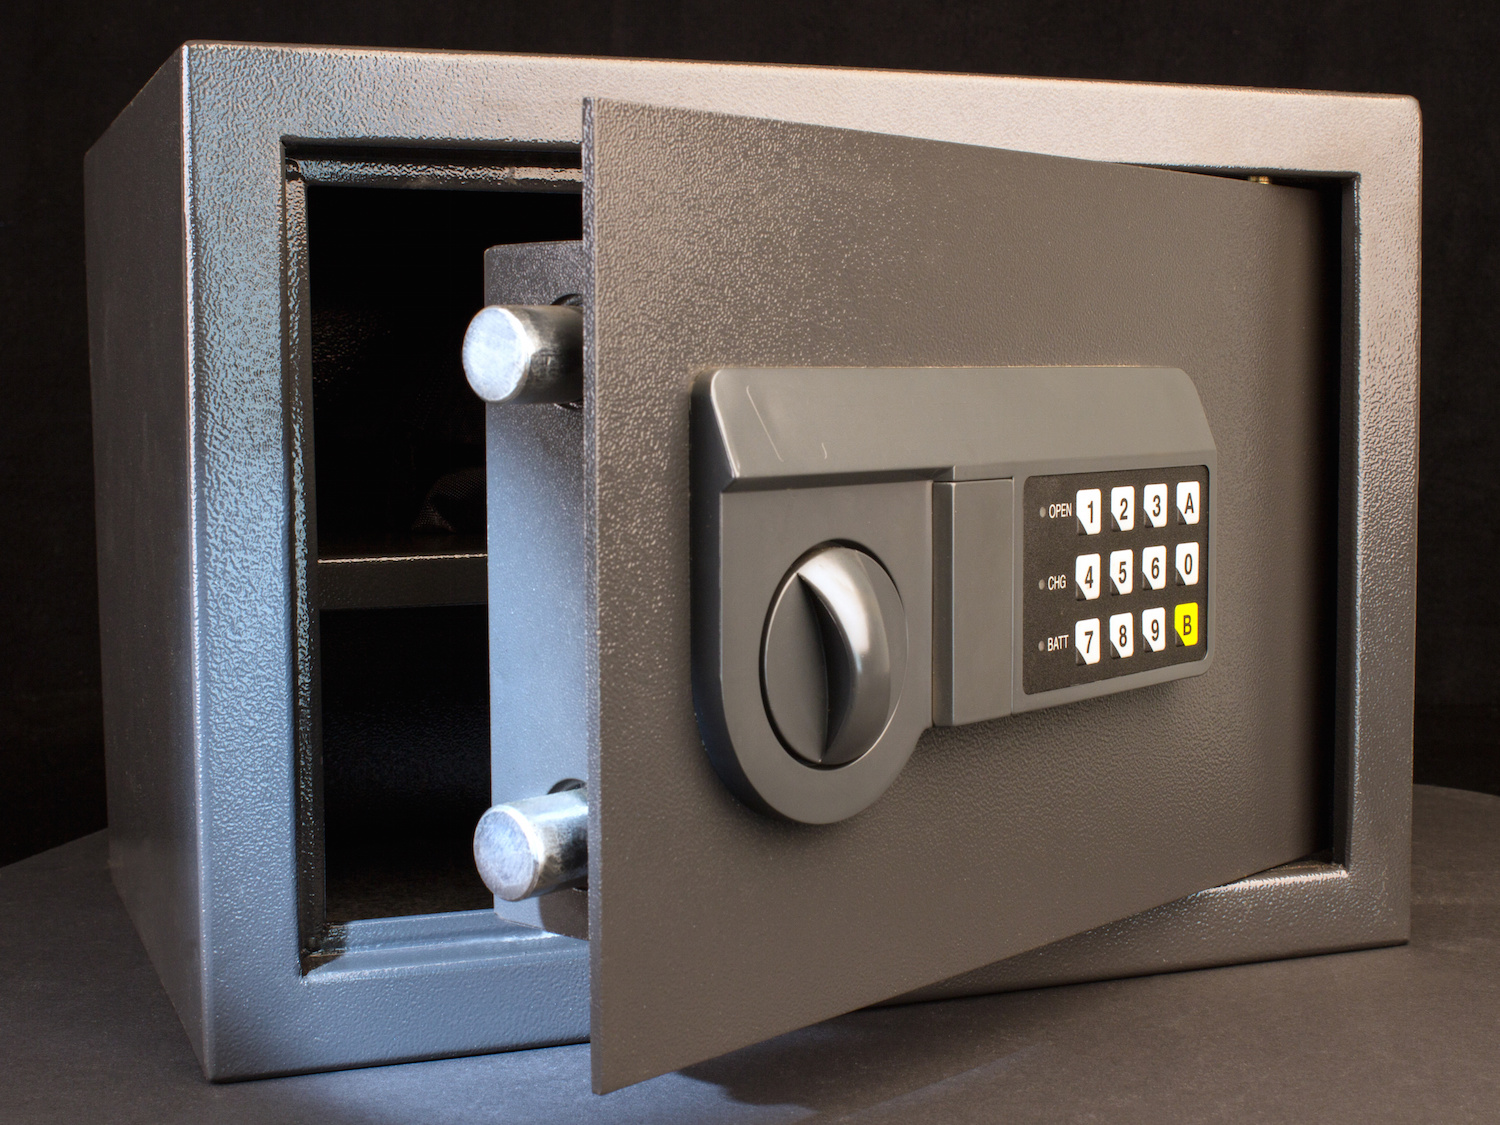 How to choose a home safe, safes serviced, safe locksmith, open safe, safe lock,